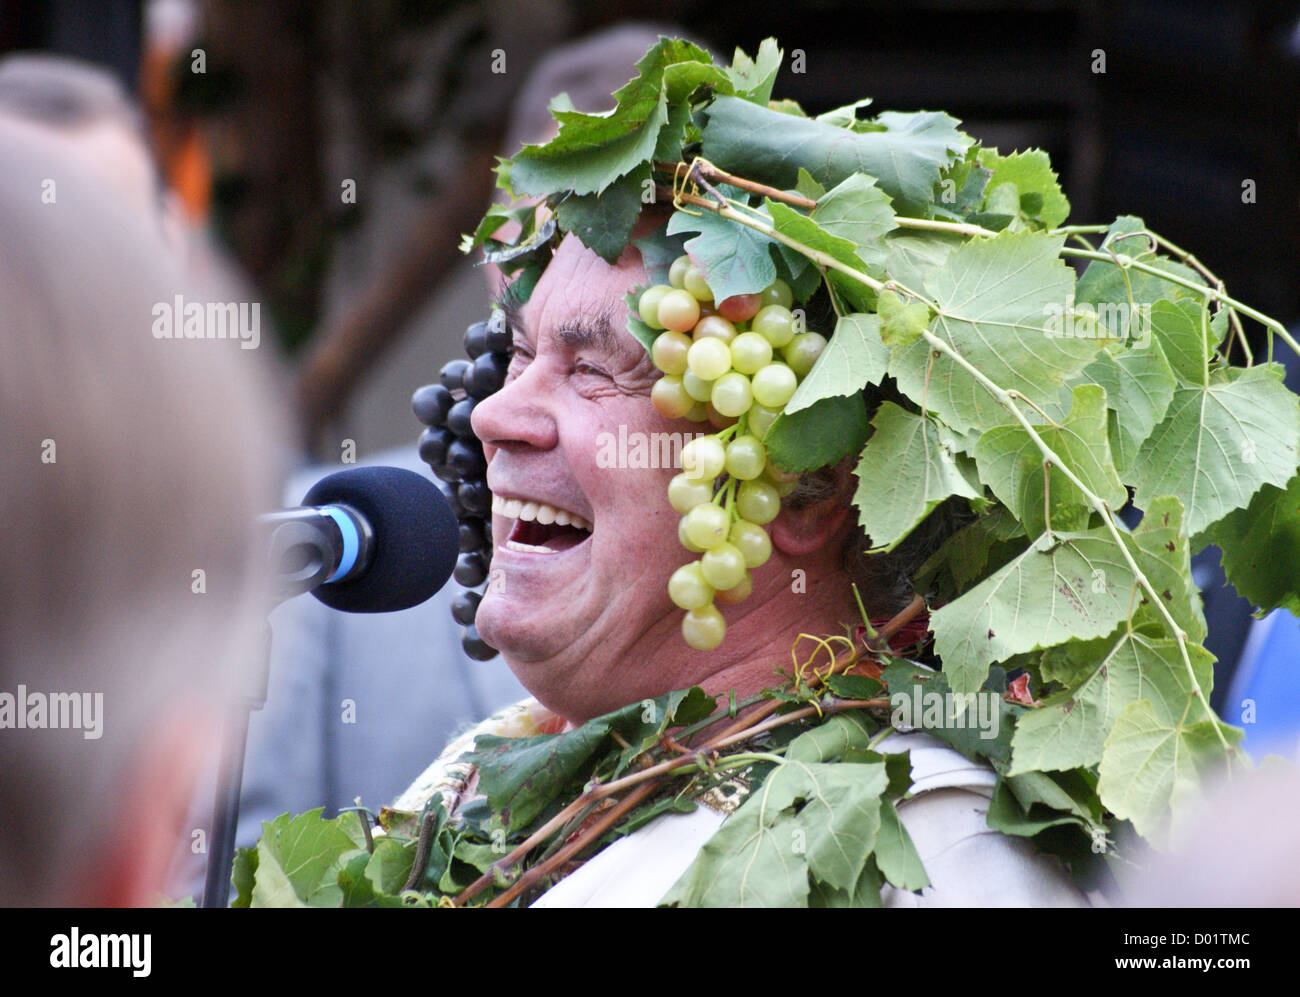 Herbert Graedtke als "Bacchus" in Radebeul Herbst Und Weinfest, Herbst Weinfest, Radebeul, Sachsen, Sachsen, Deutschland Stockfoto